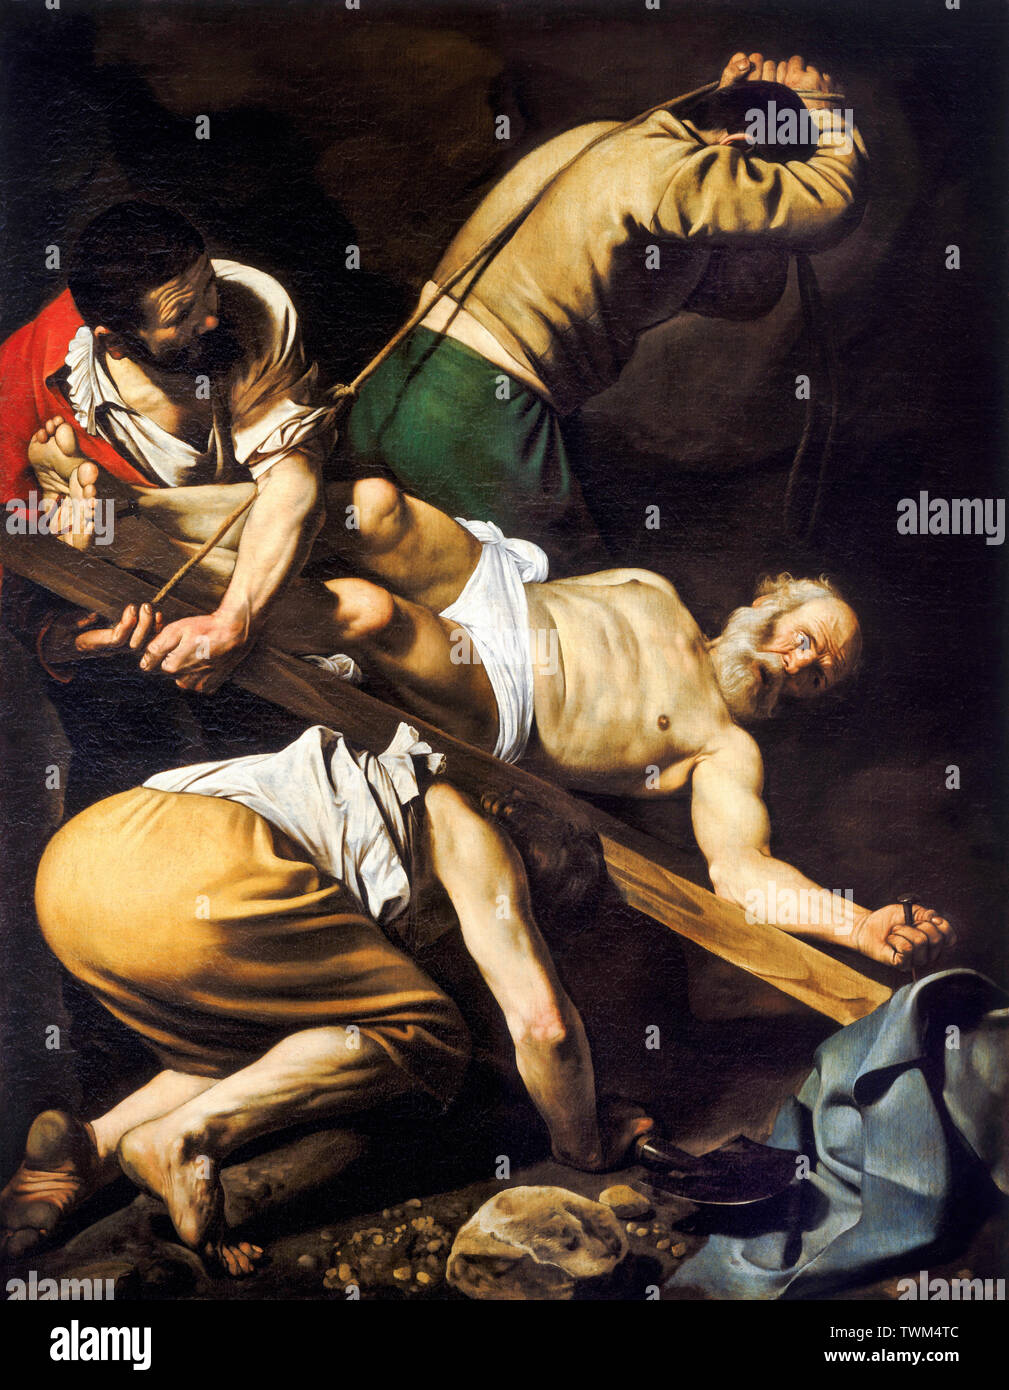 Caravaggio, Crucifixion de Saint-Pierre, peinture baroque, vers 1600 Banque D'Images